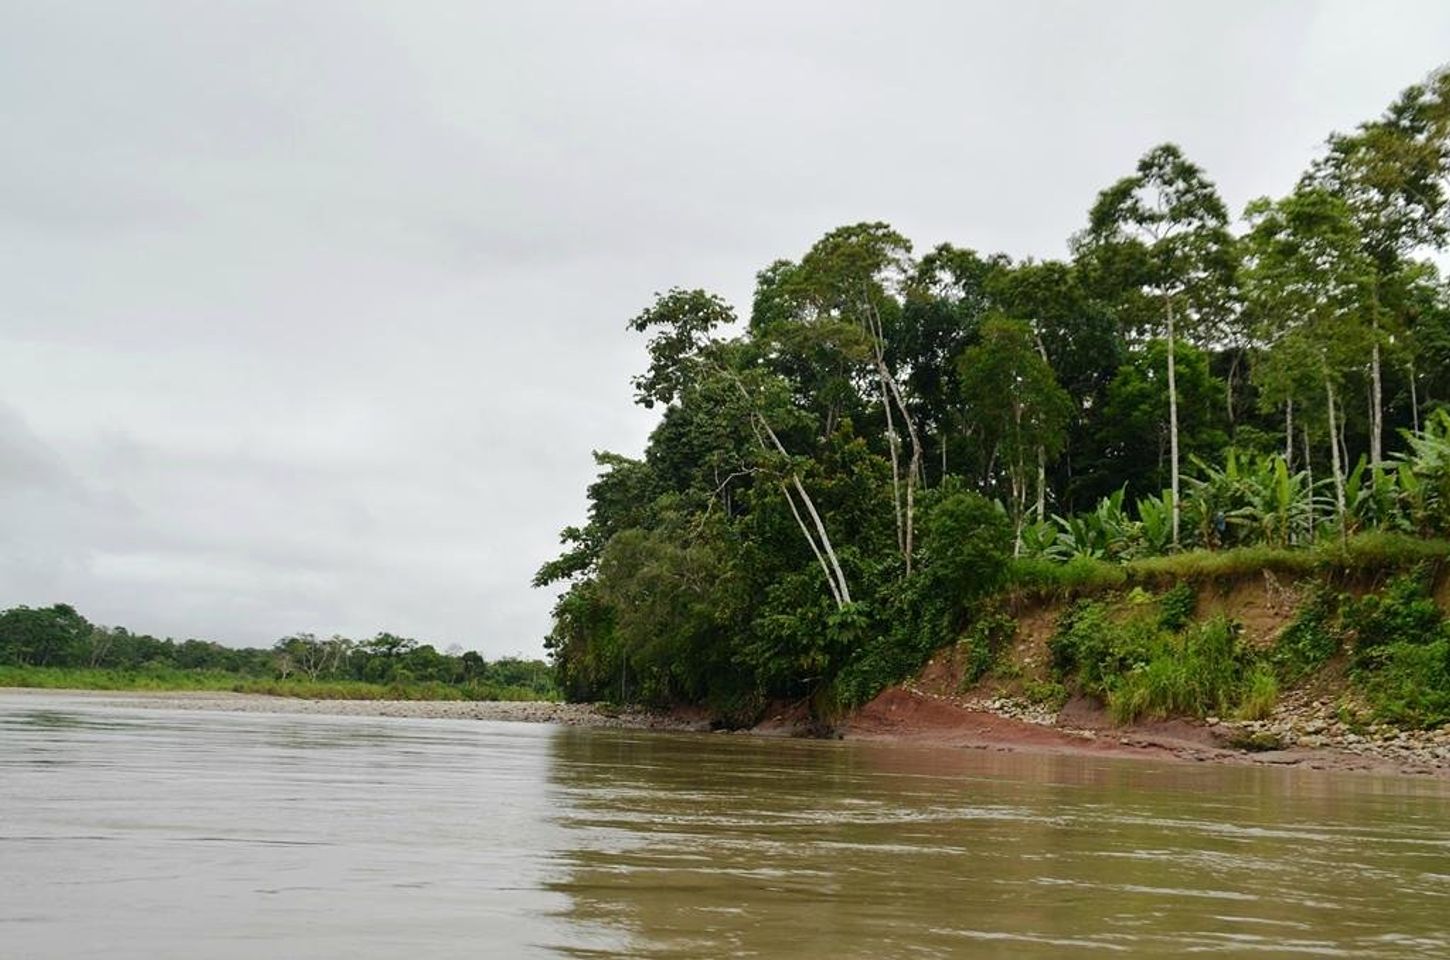 Wilde avonturen wachten: Raften op de Napo-rivier in Tena, Ecuador.